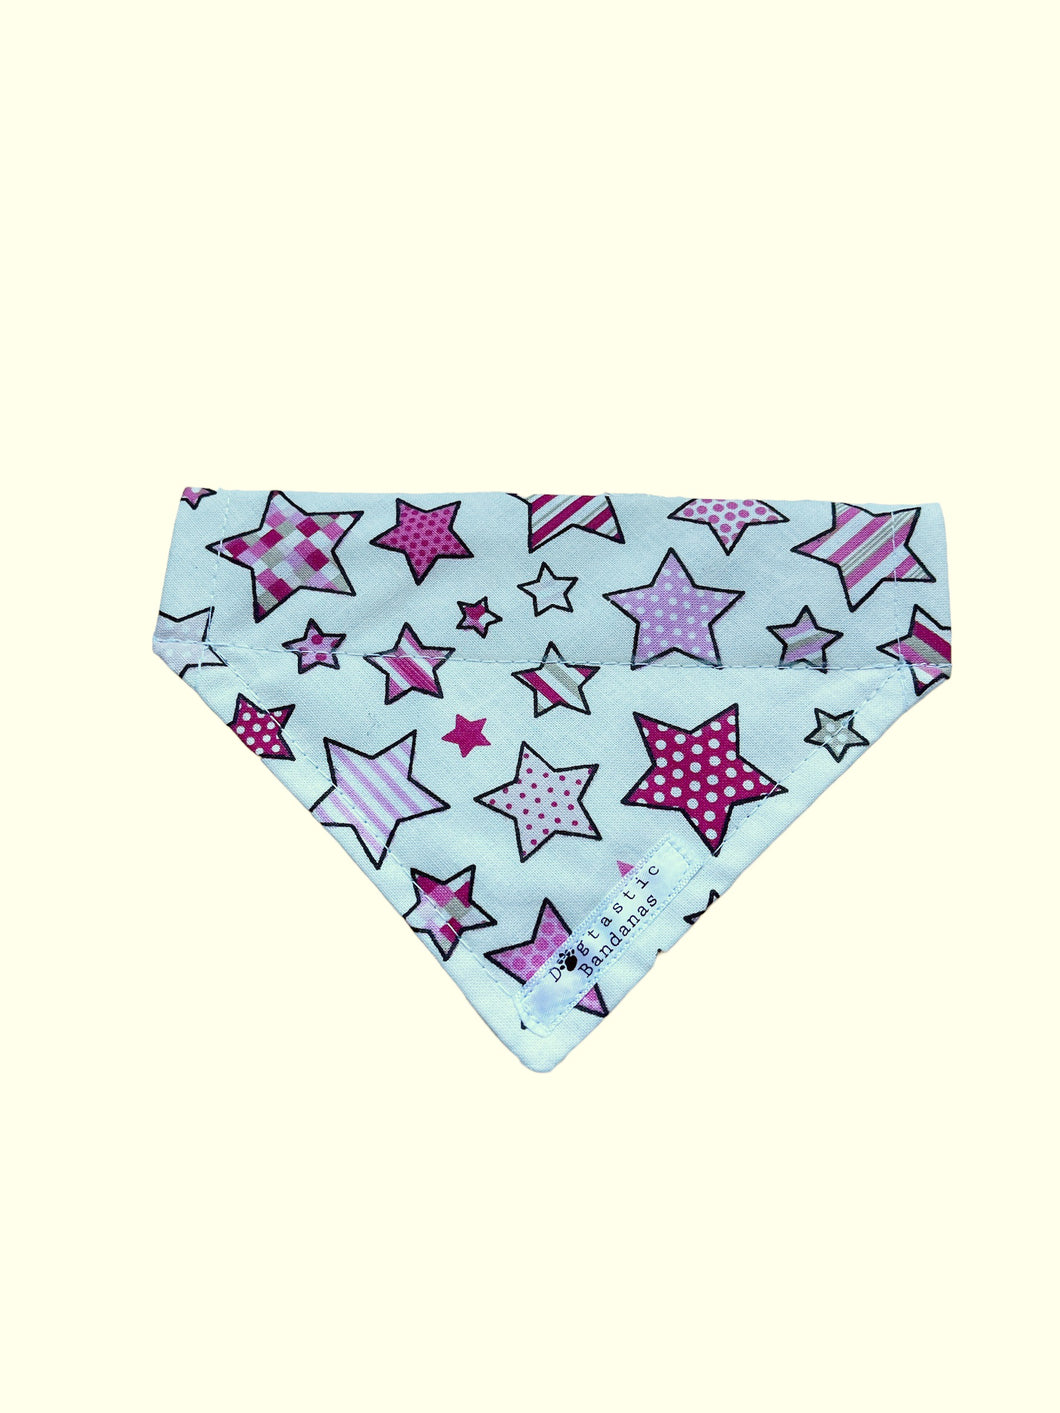 Pink stars dog/pet bandana